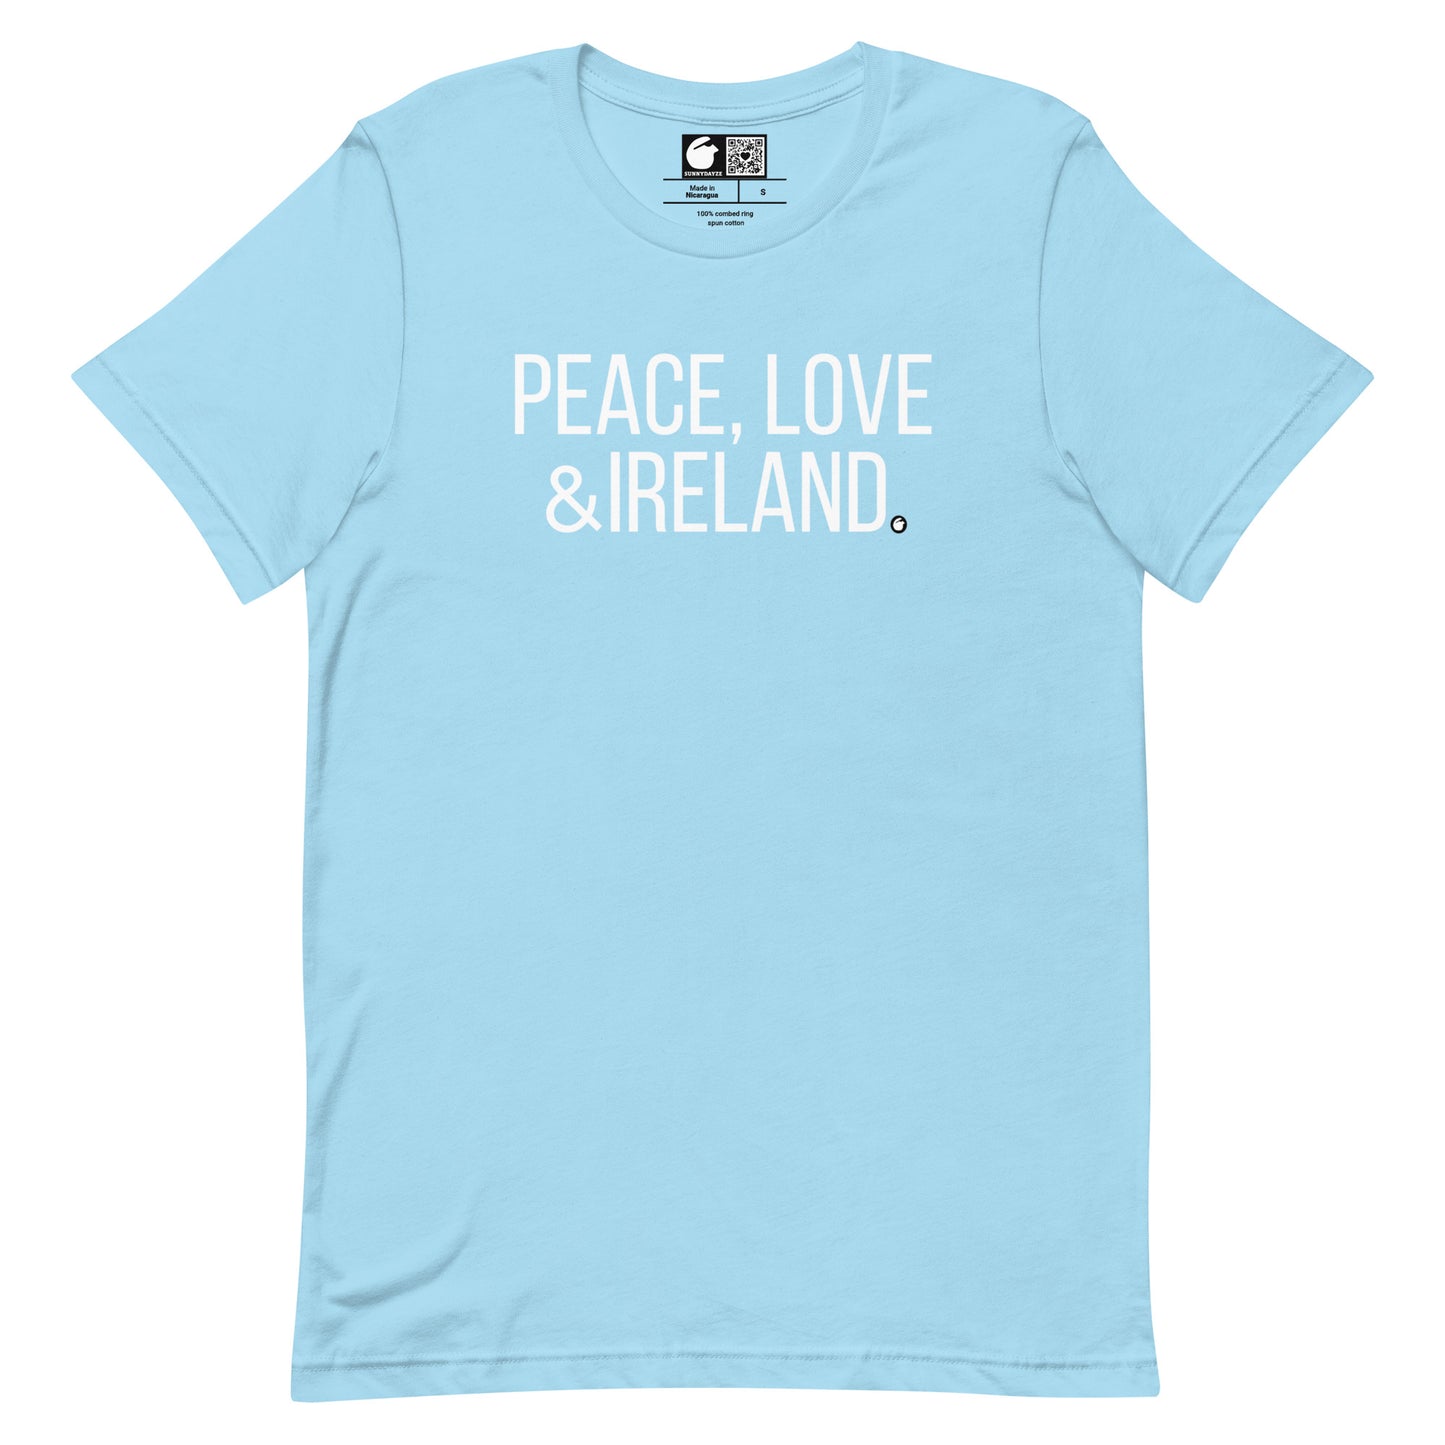 IRELAND Short-Sleeve Unisex t-shirt